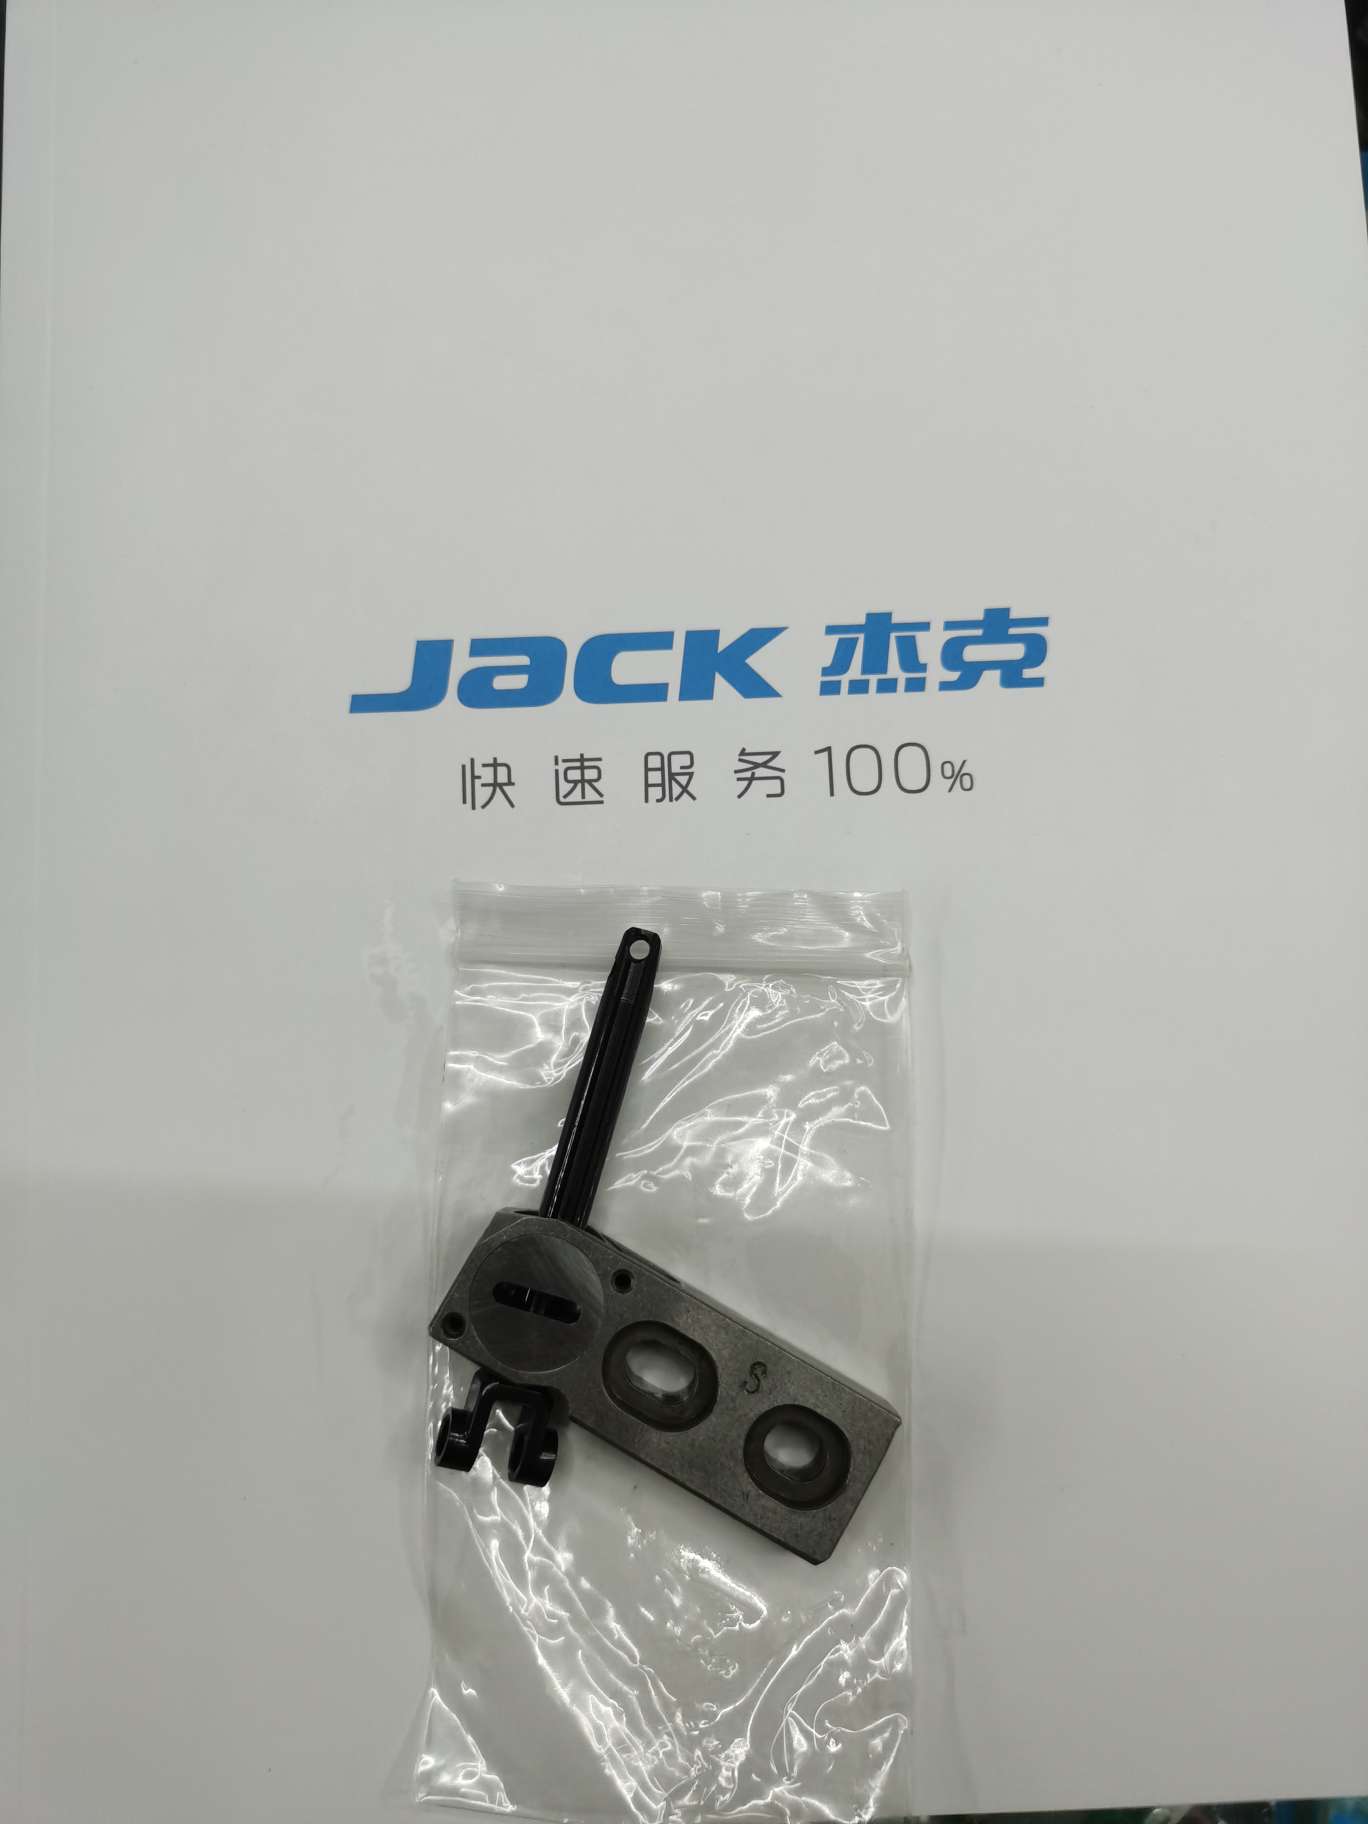 杰克Jack上弯针导套组件物美价廉欢迎选购图